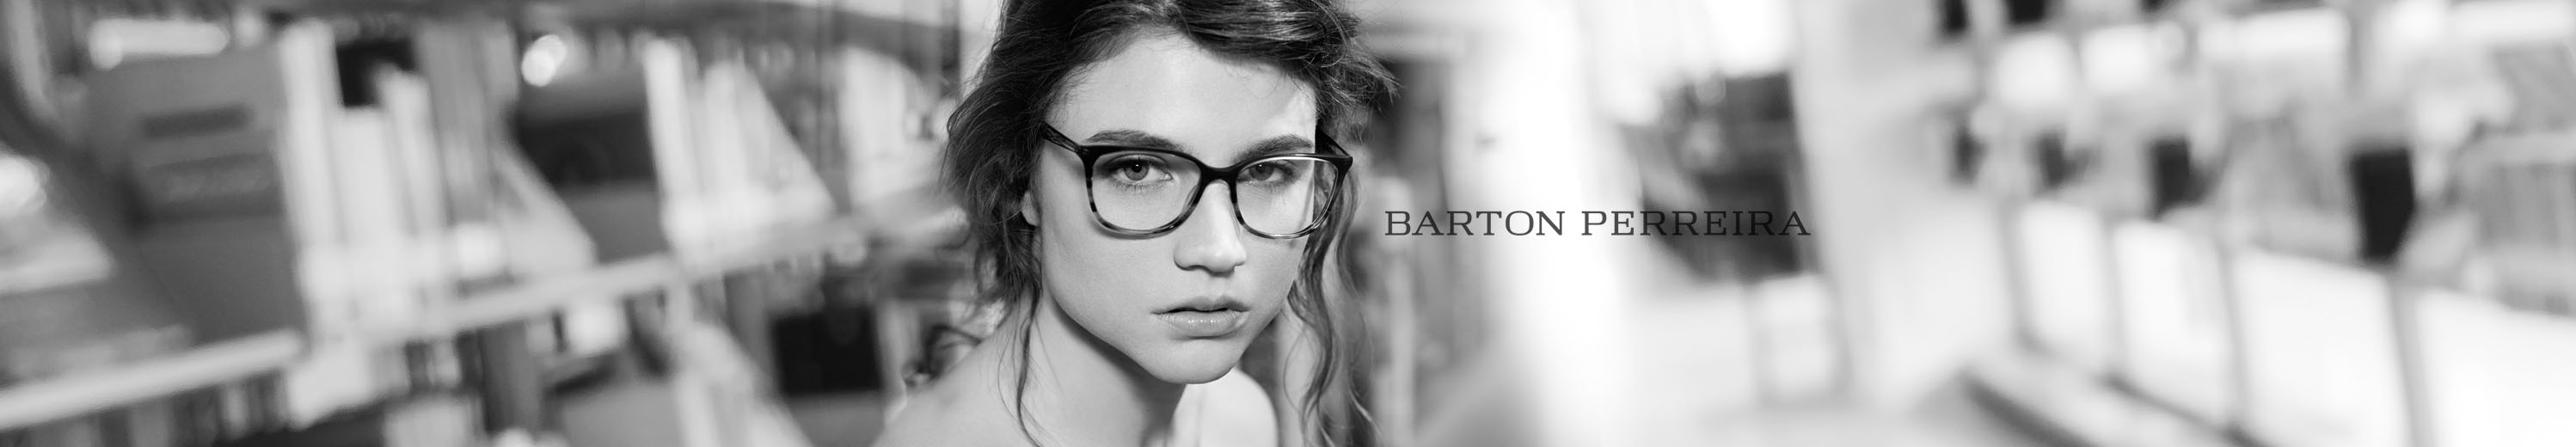 Barton Perreira Rectangle Eyeglasses